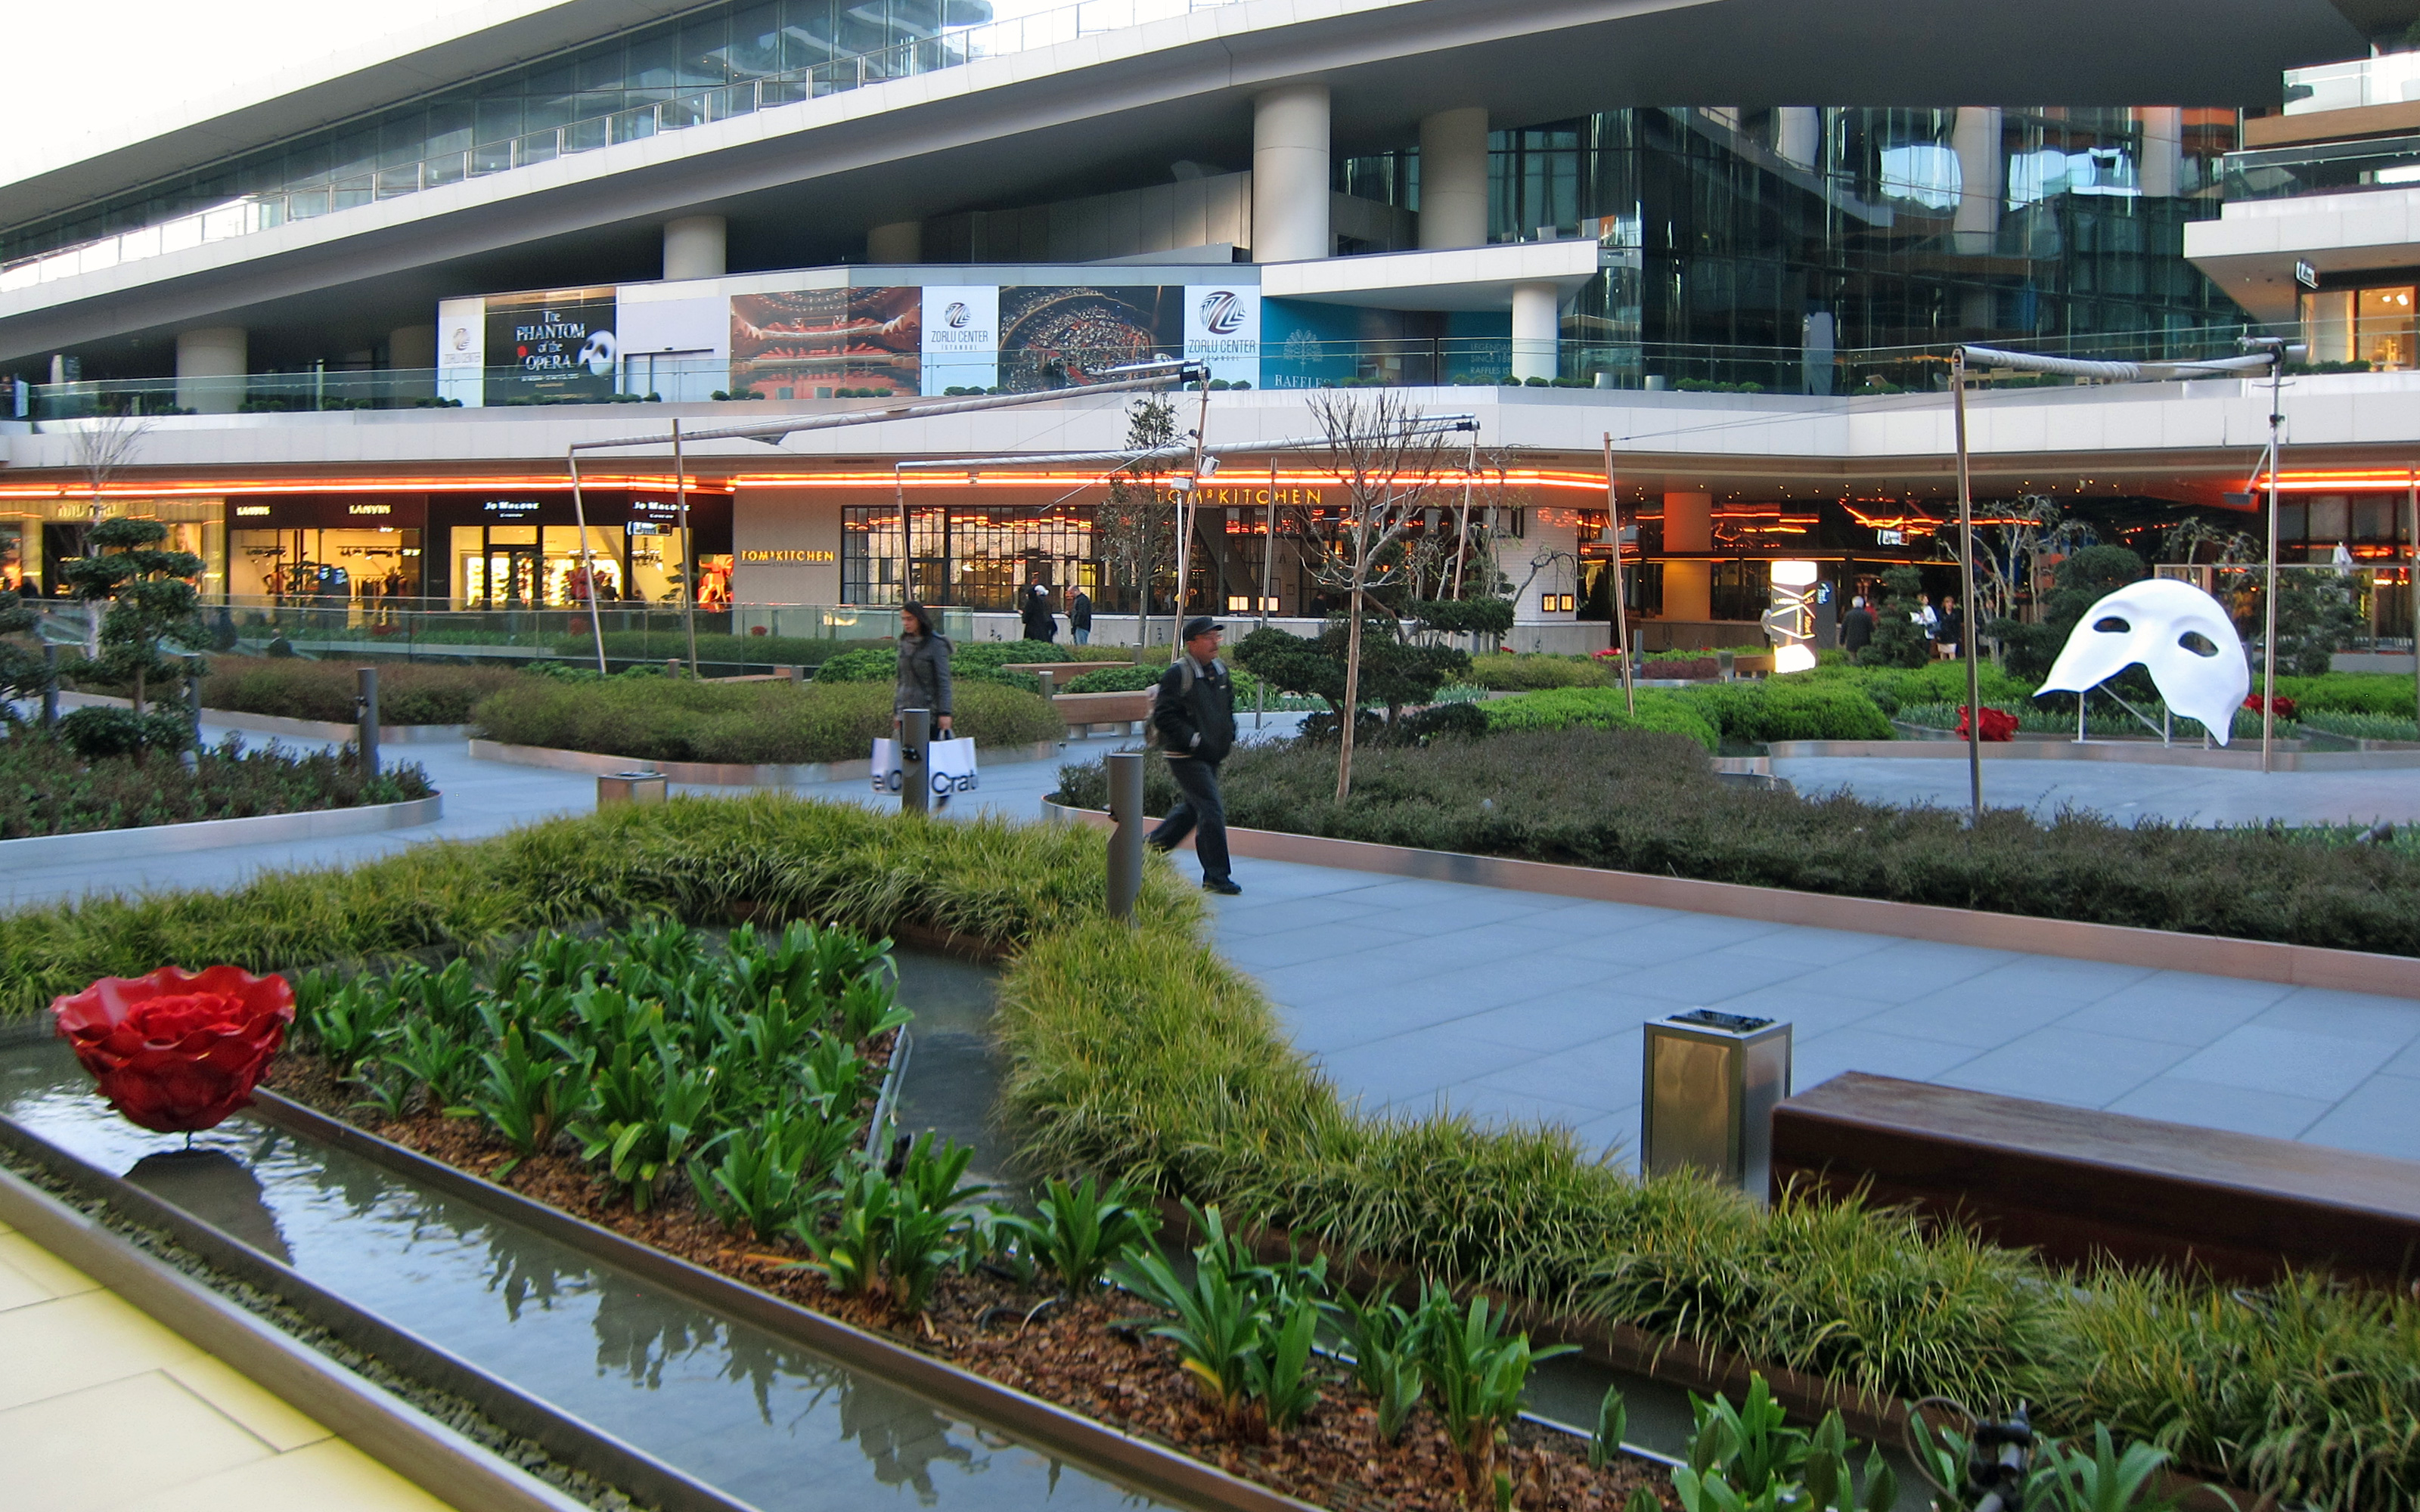 Centro comercial con áreas verdes y piscinas de agua